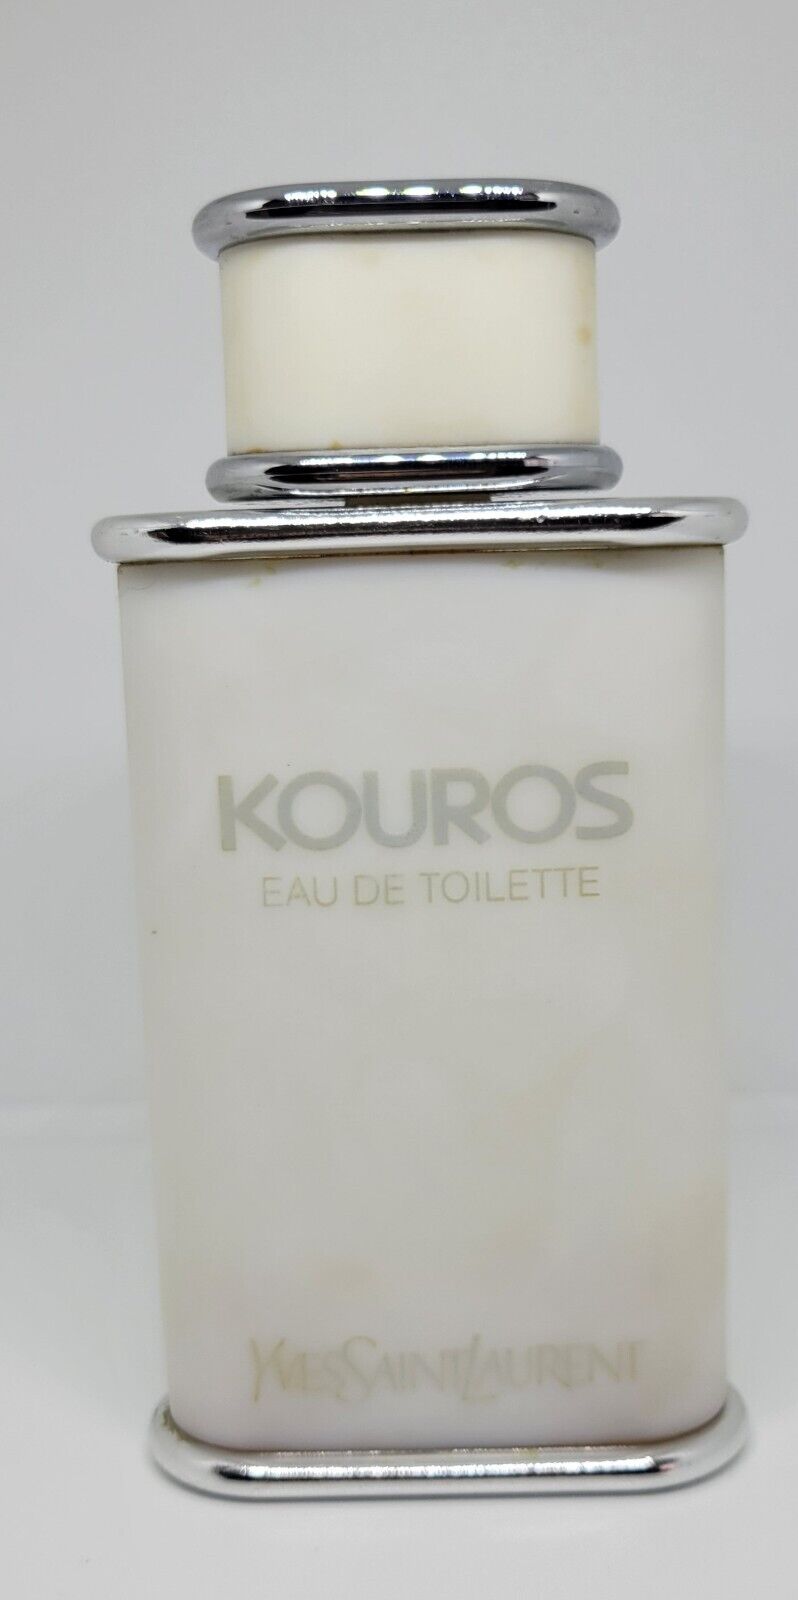 Vintage YVES SAINT LAURENT KOUROS Eau de Toilette 100 ml 3.3 oz 20% REMAINING